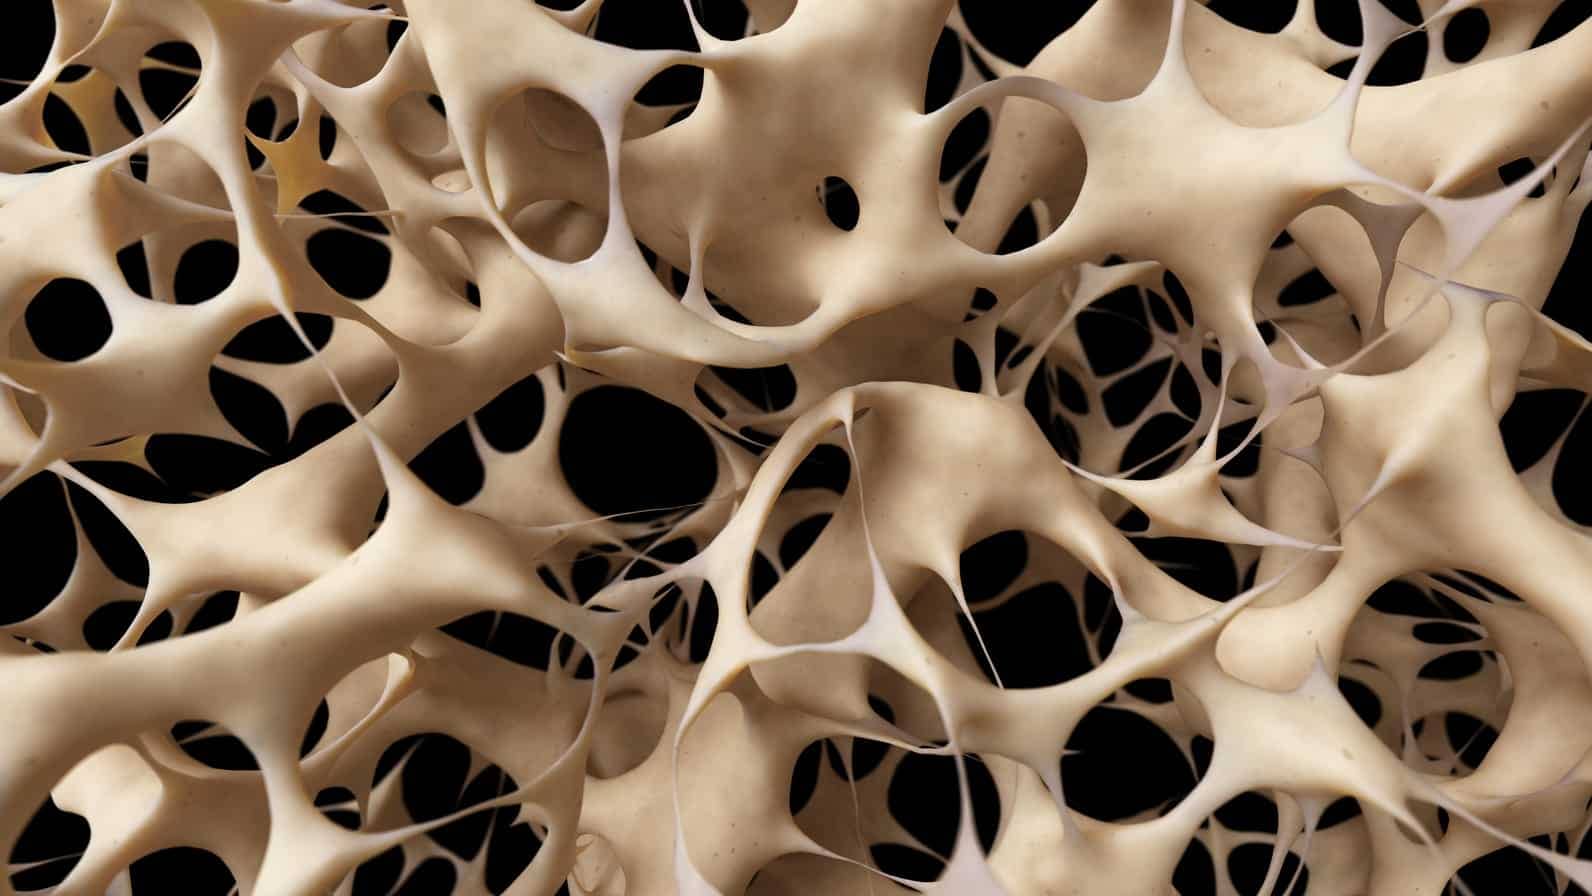 L'ostéoporose est une maladie caractérisée par une faible masse osseuse et la perte de tissus osseux qui peuvent conduire à des faiblesses et des fragilités des os.